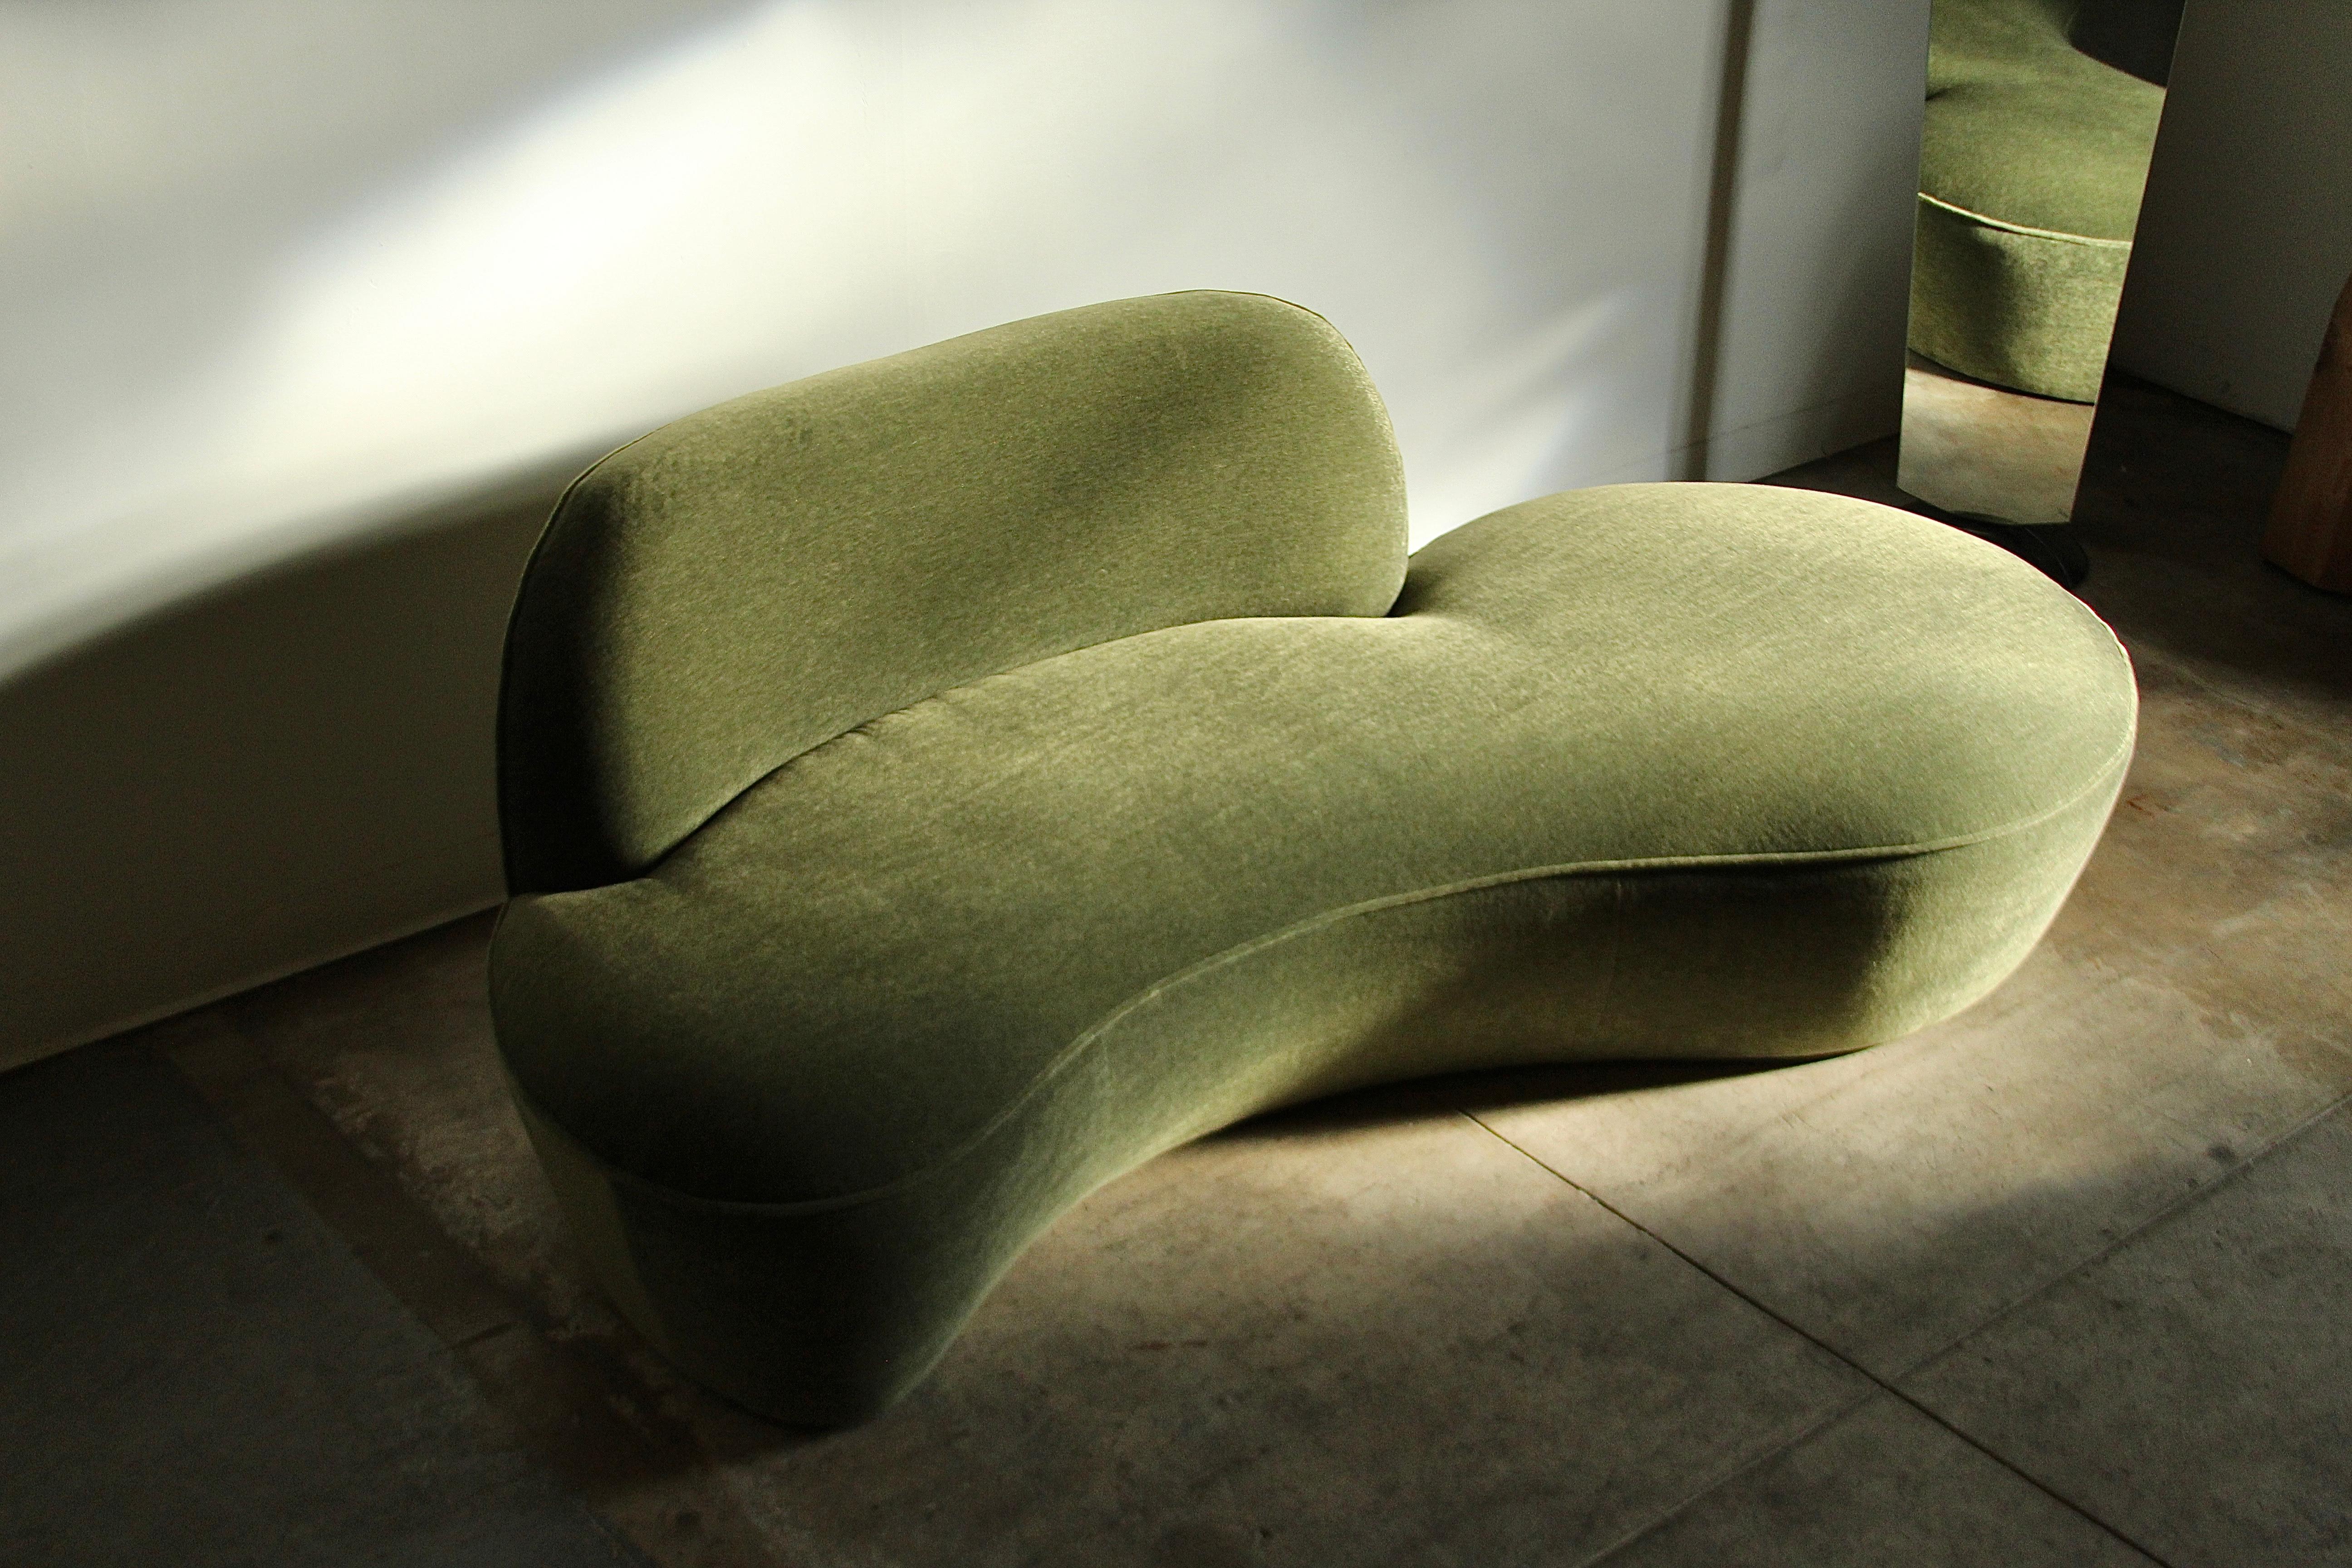 Un superbe canapé serpentin de Vladimir Kagan pour American Leather, vers les années 2000. Cette pièce a été magistralement retapissée dans un somptueux mohair vert mousse. Il rehaussera tout espace intérieur grâce à sa forme curviligne et à son